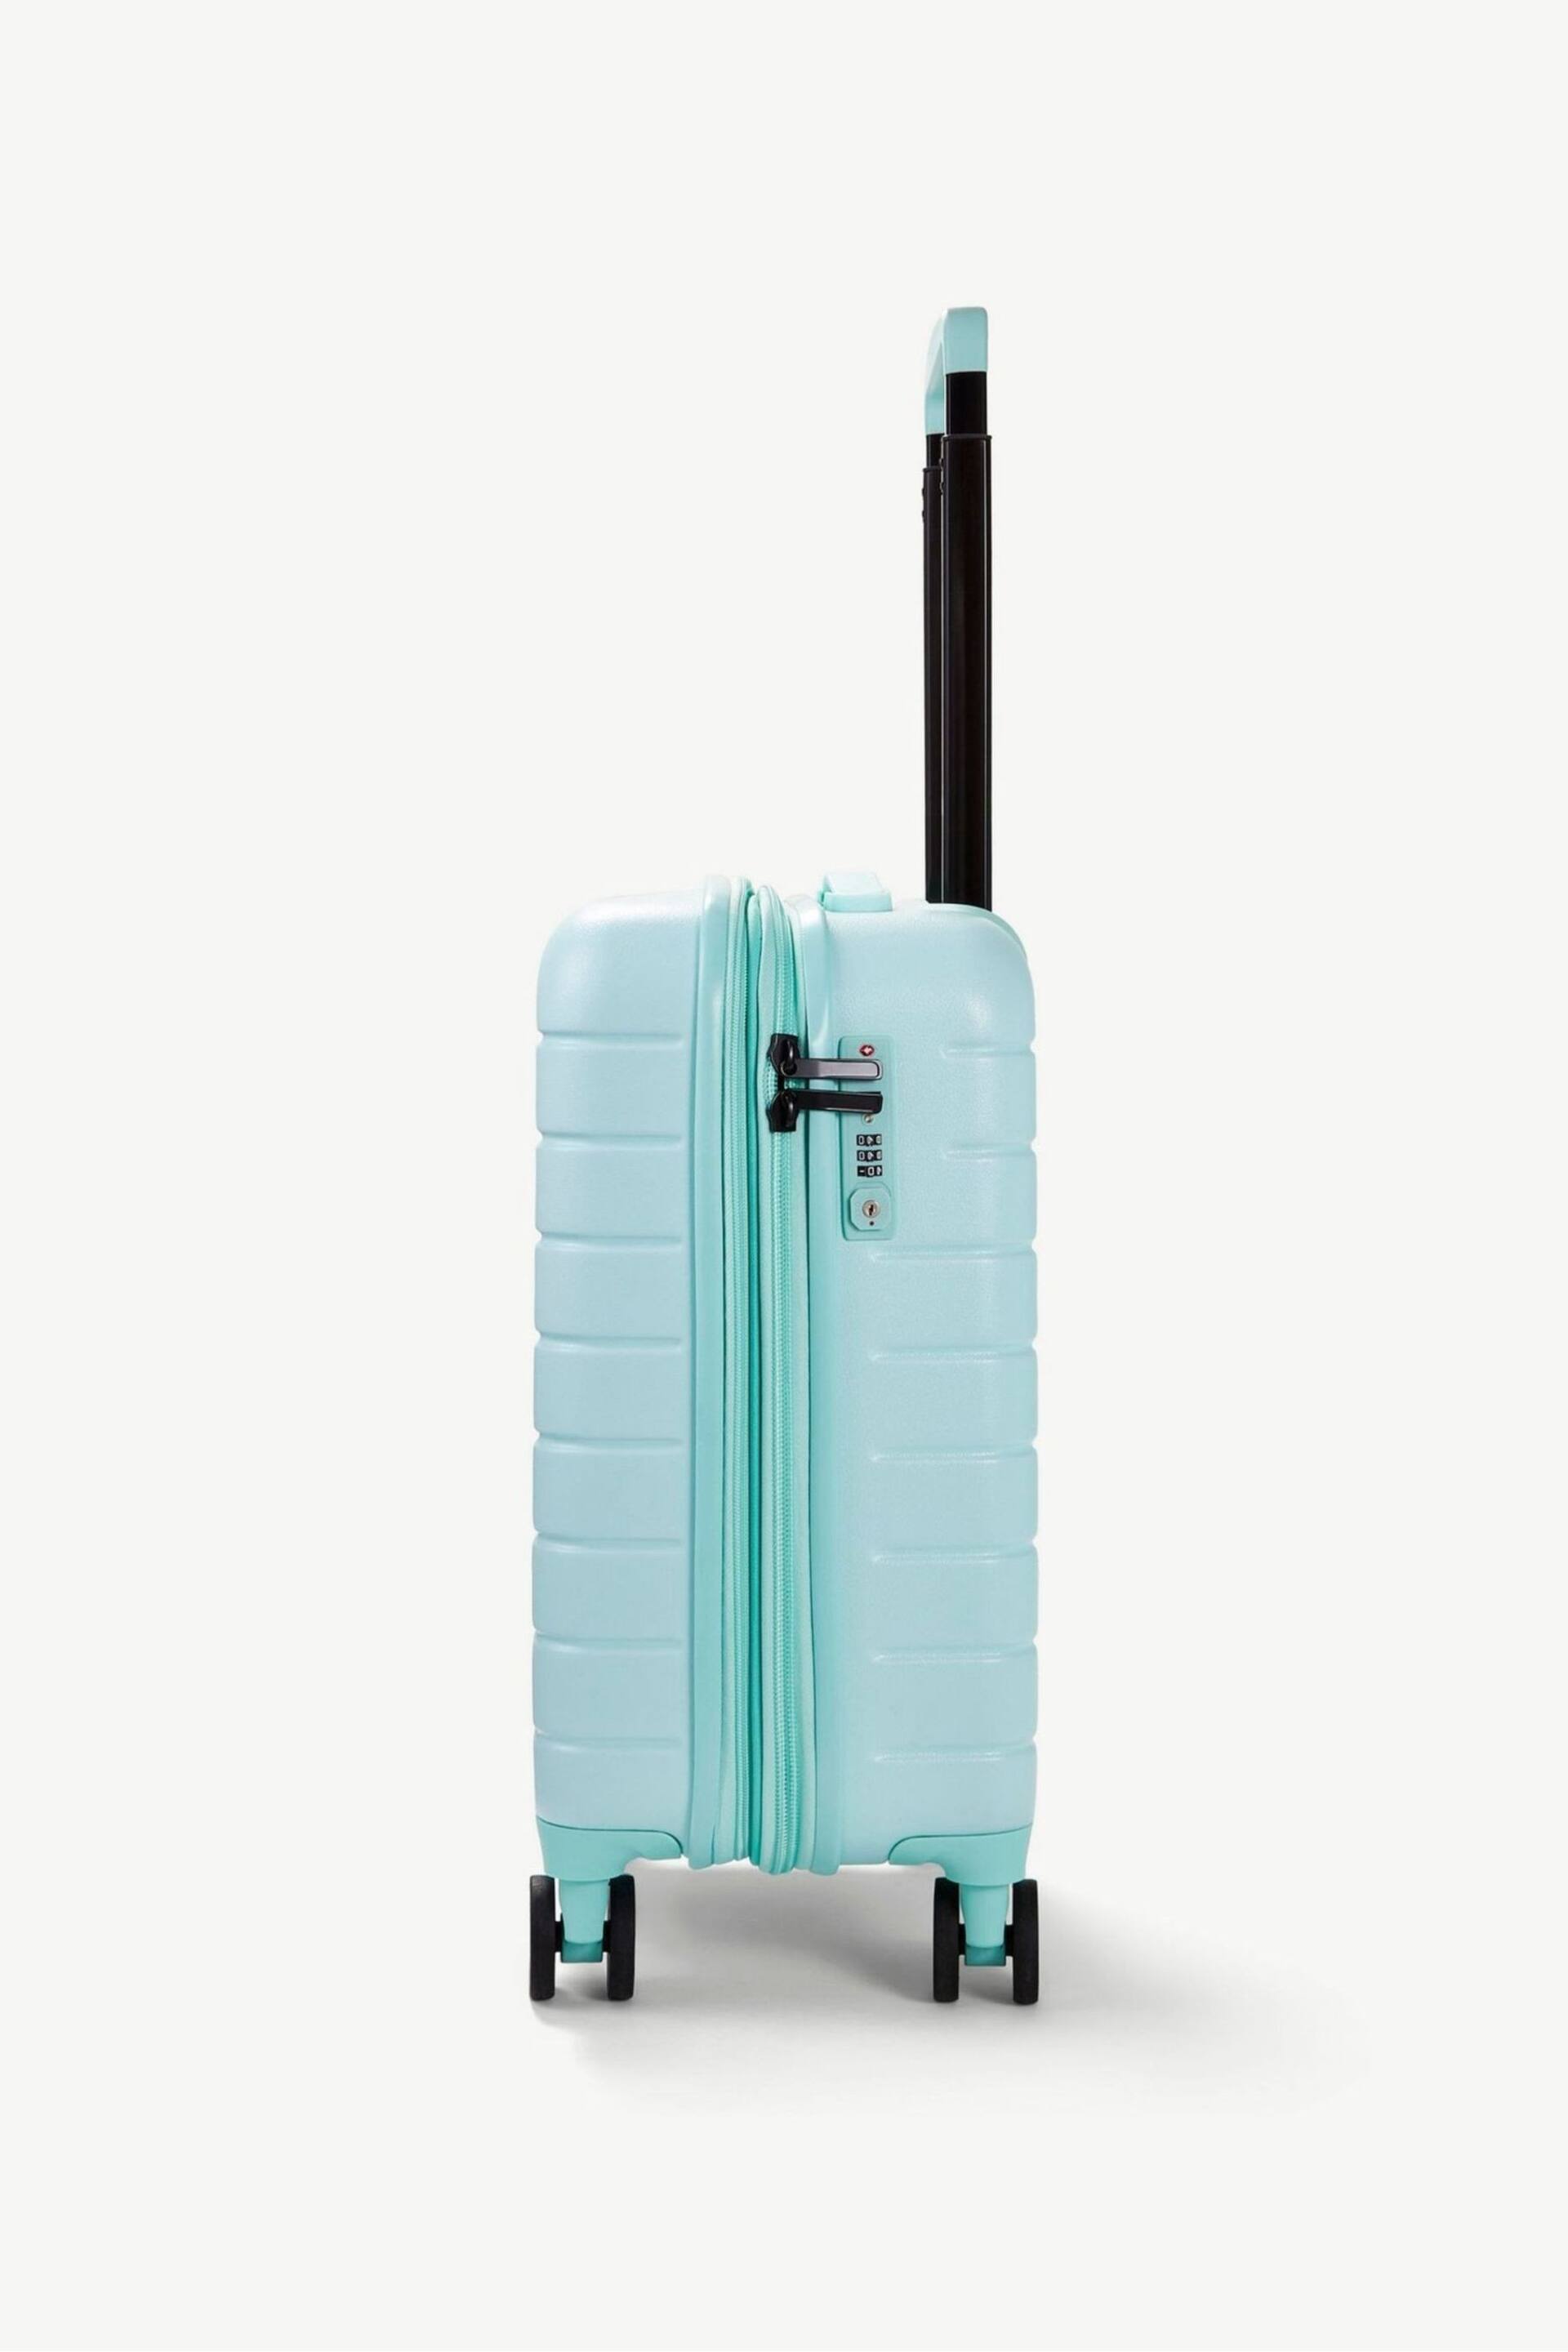 Rock Luggage Novo Cabin Suitcase - Image 3 of 7